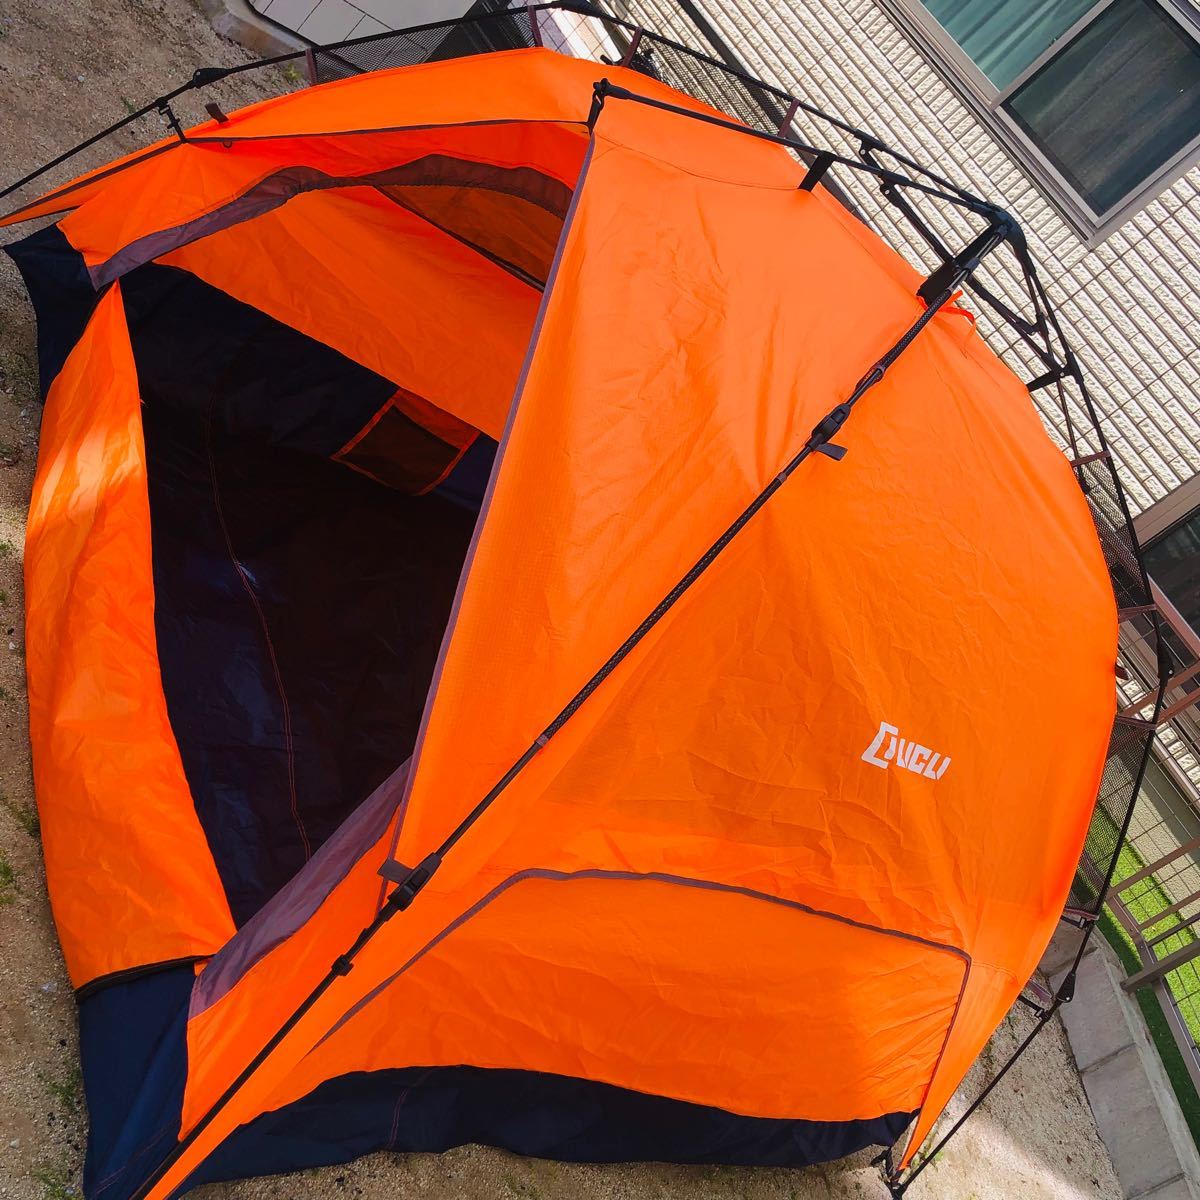 PayPayフリマ｜新品未使用テント ワンタッチテント 2way 日よけ キャンプ アウトドア タープ サンシェード 紫外線対策 オレンジ